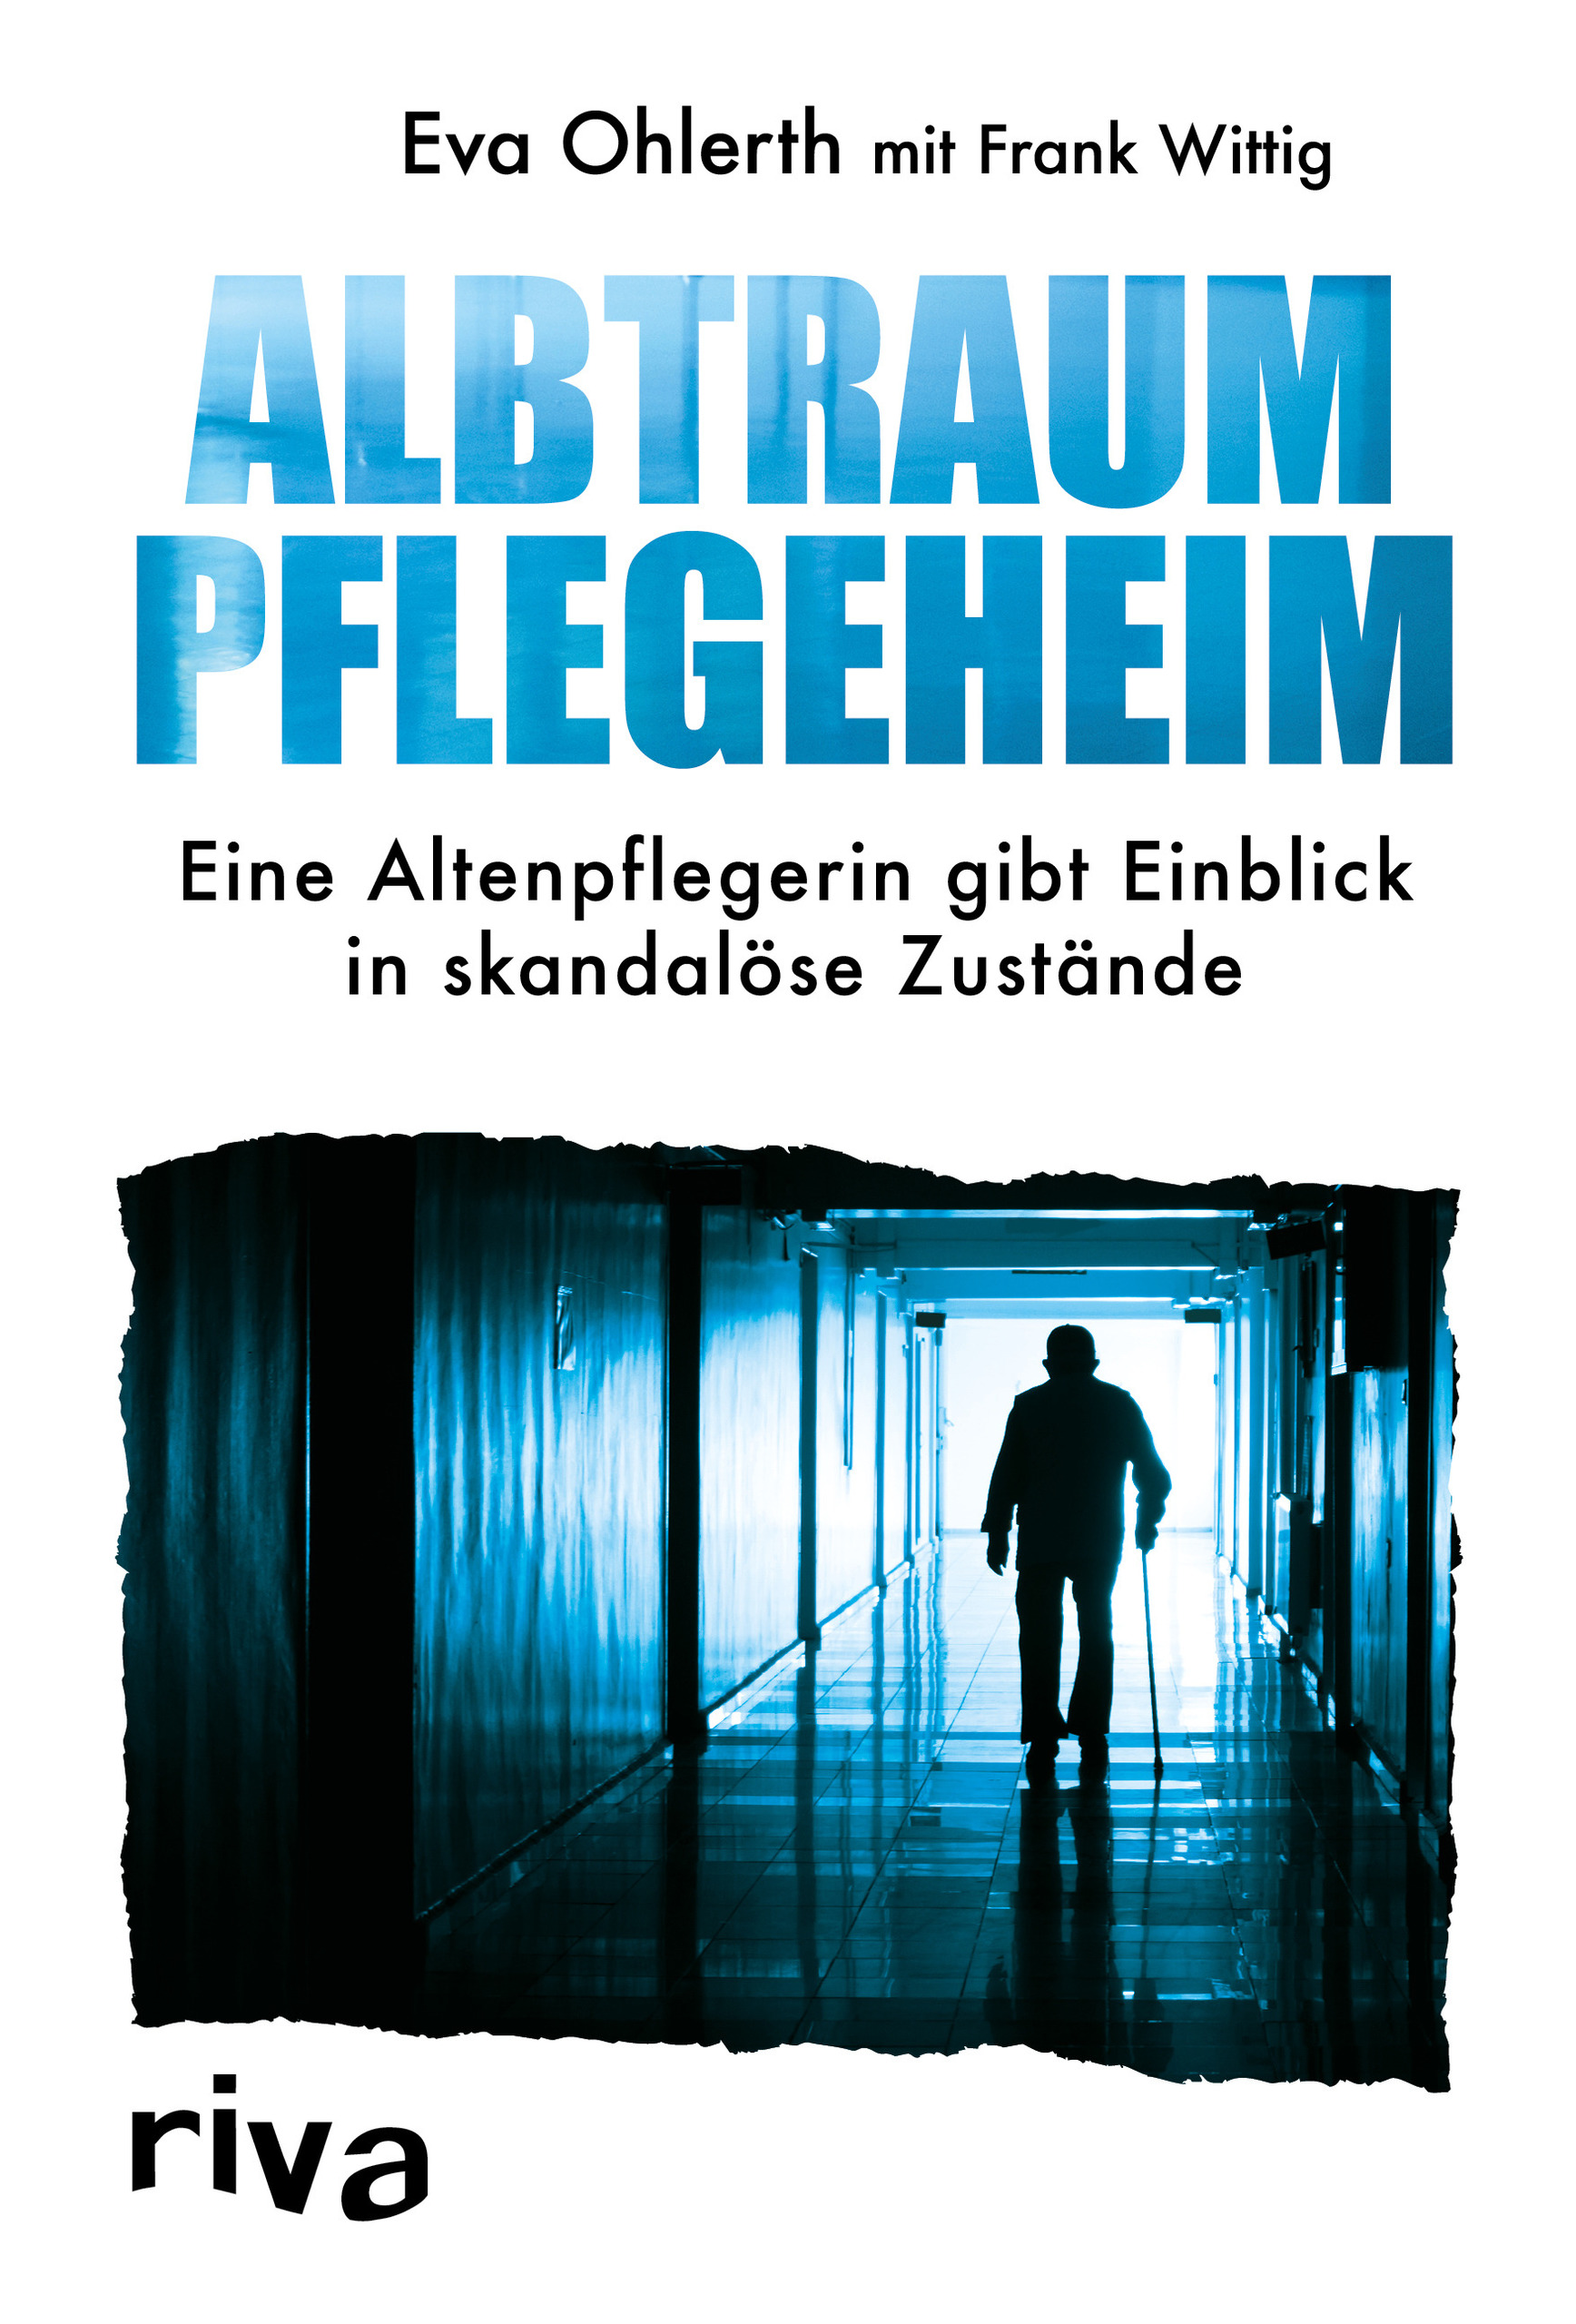 Albtraum Pflegeheim von Eva Ohlerth und Frank Wittig©rivaverlag.de